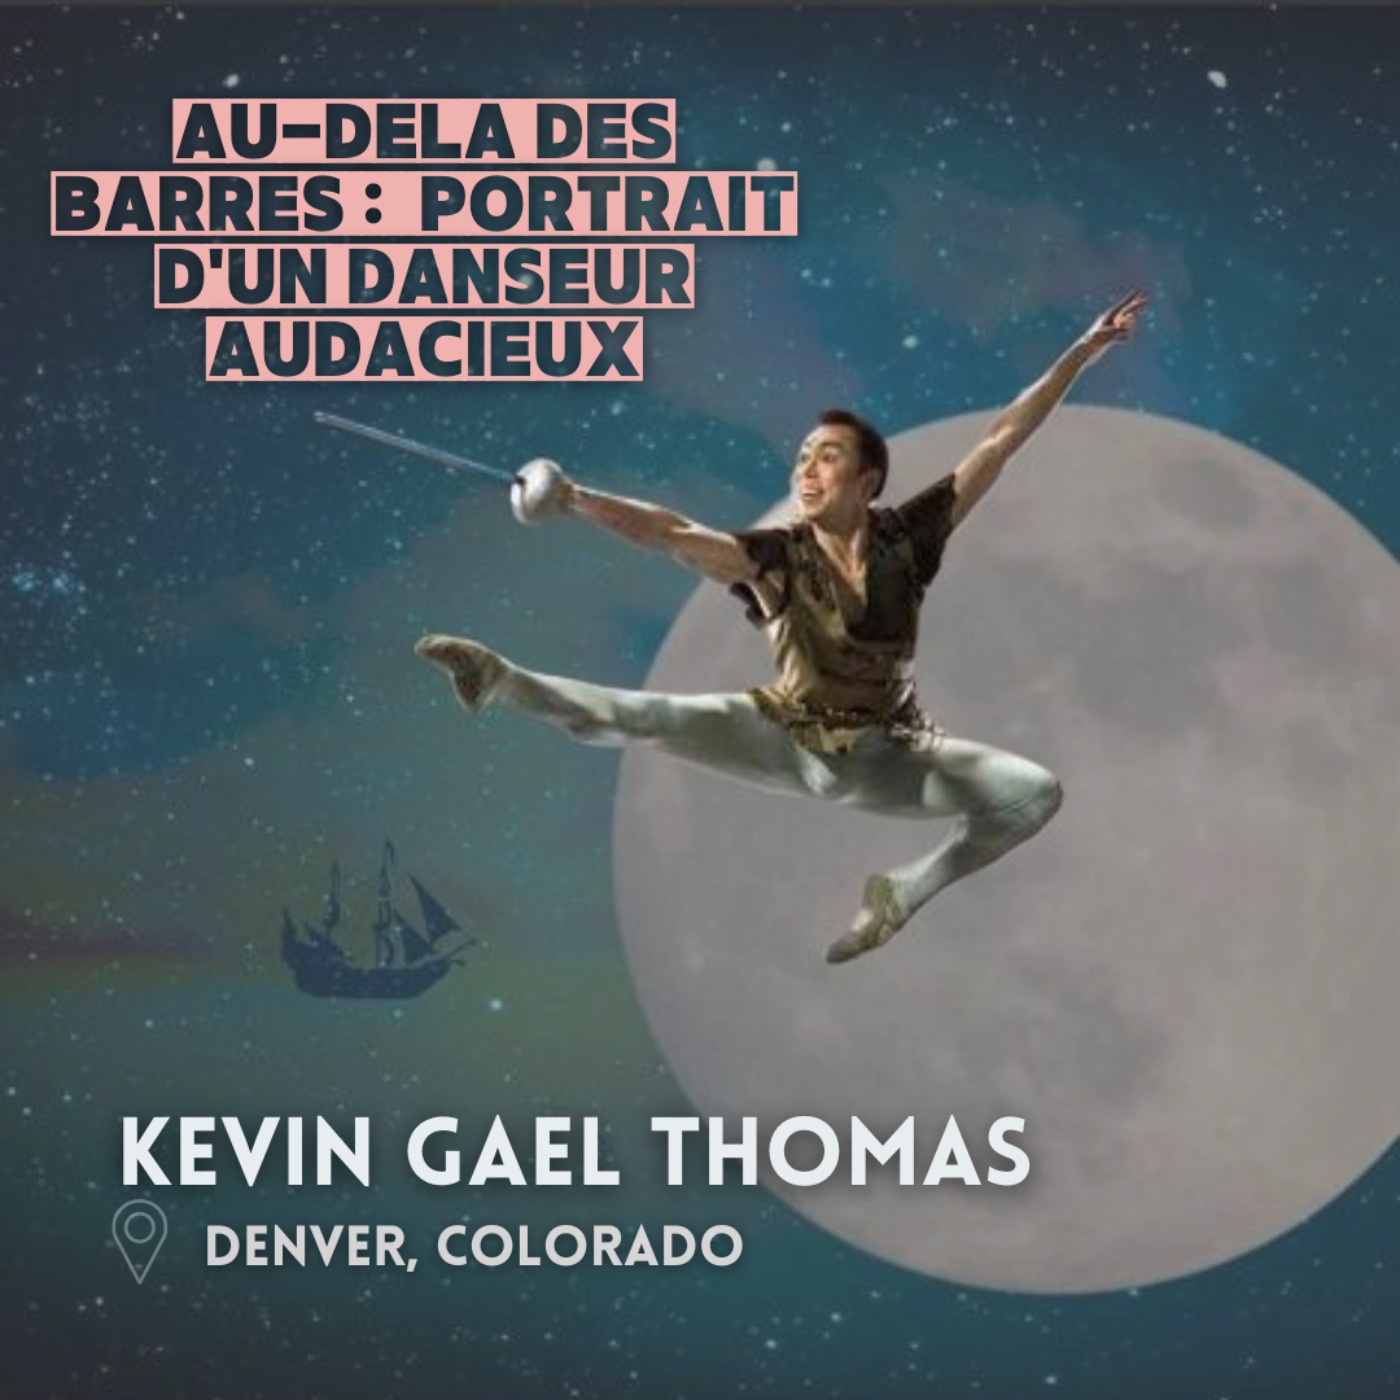 Au-Delà des Barres : Kevin Gael Thomas, Portrait d'un Danseur Audacieux